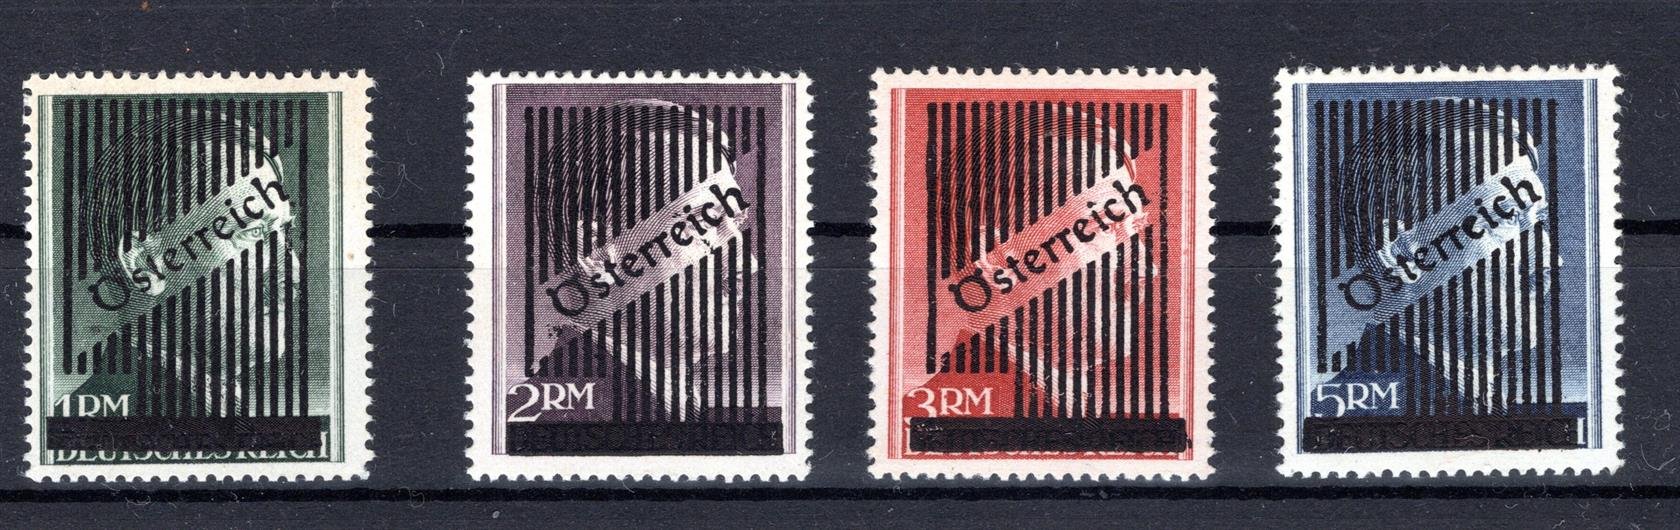 Rakousko - série 4 známek s přetiskem 